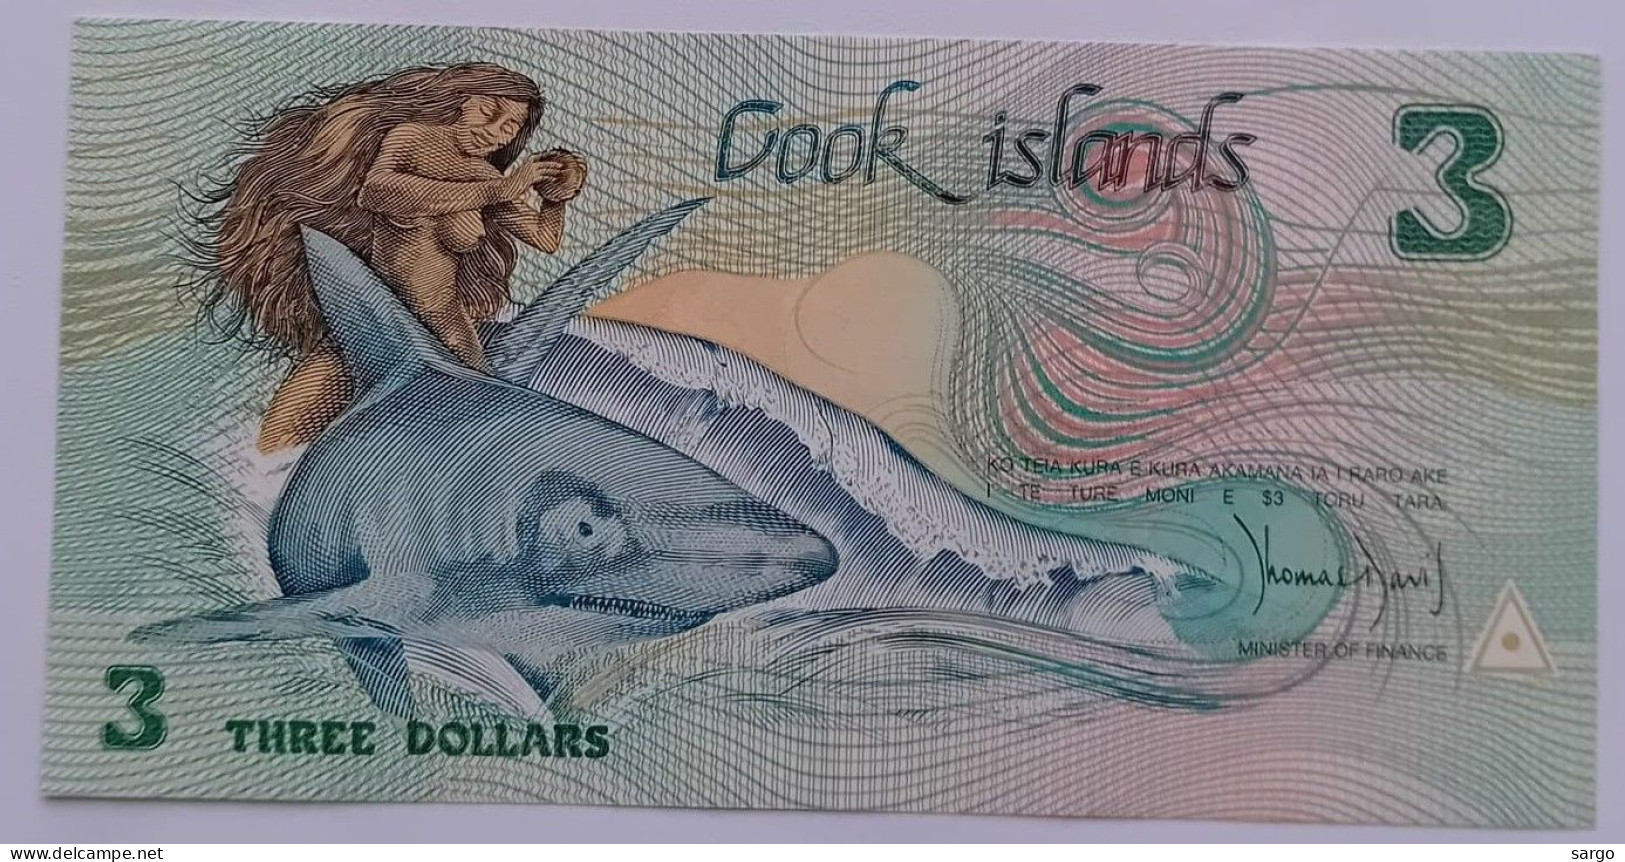 COOK ISLANDS - 3 DOLLARS - 1992 - UNC - P 6  - BANKNOTES - PAPER MONEY - CARTAMONETA - - Cookeilanden